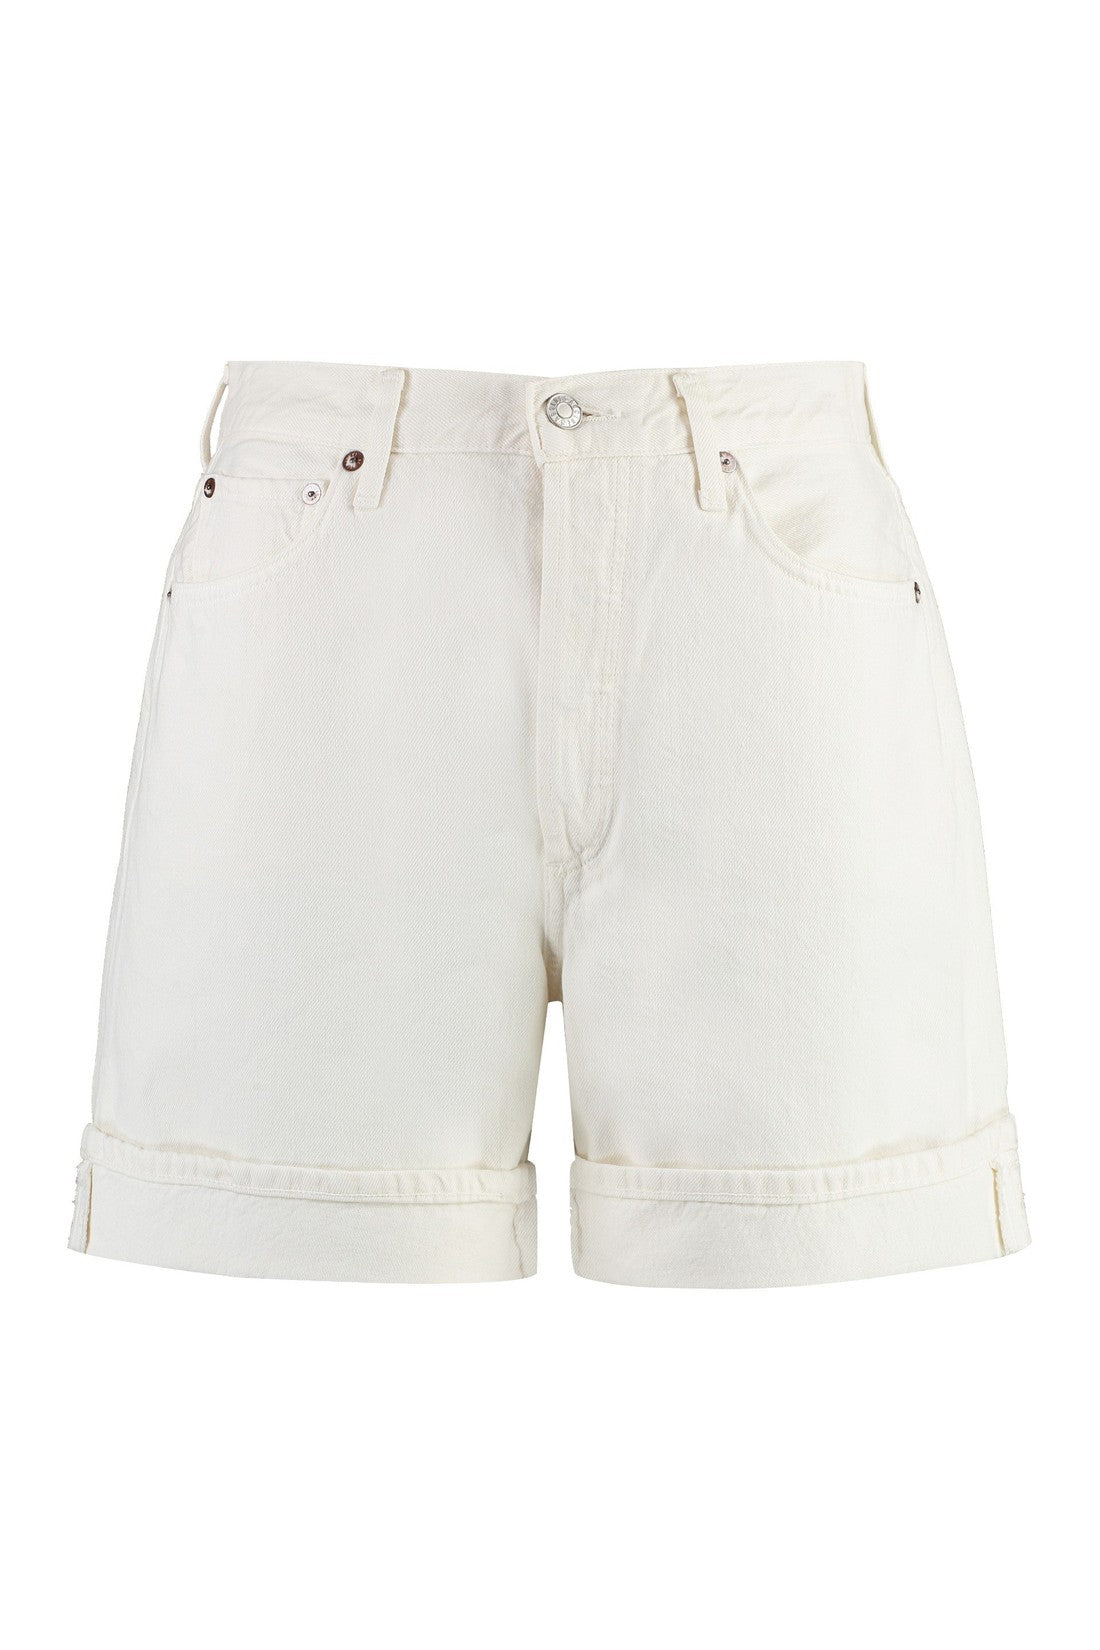 AGOLDE-OUTLET-SALE-Cotton bermuda shorts-ARCHIVIST